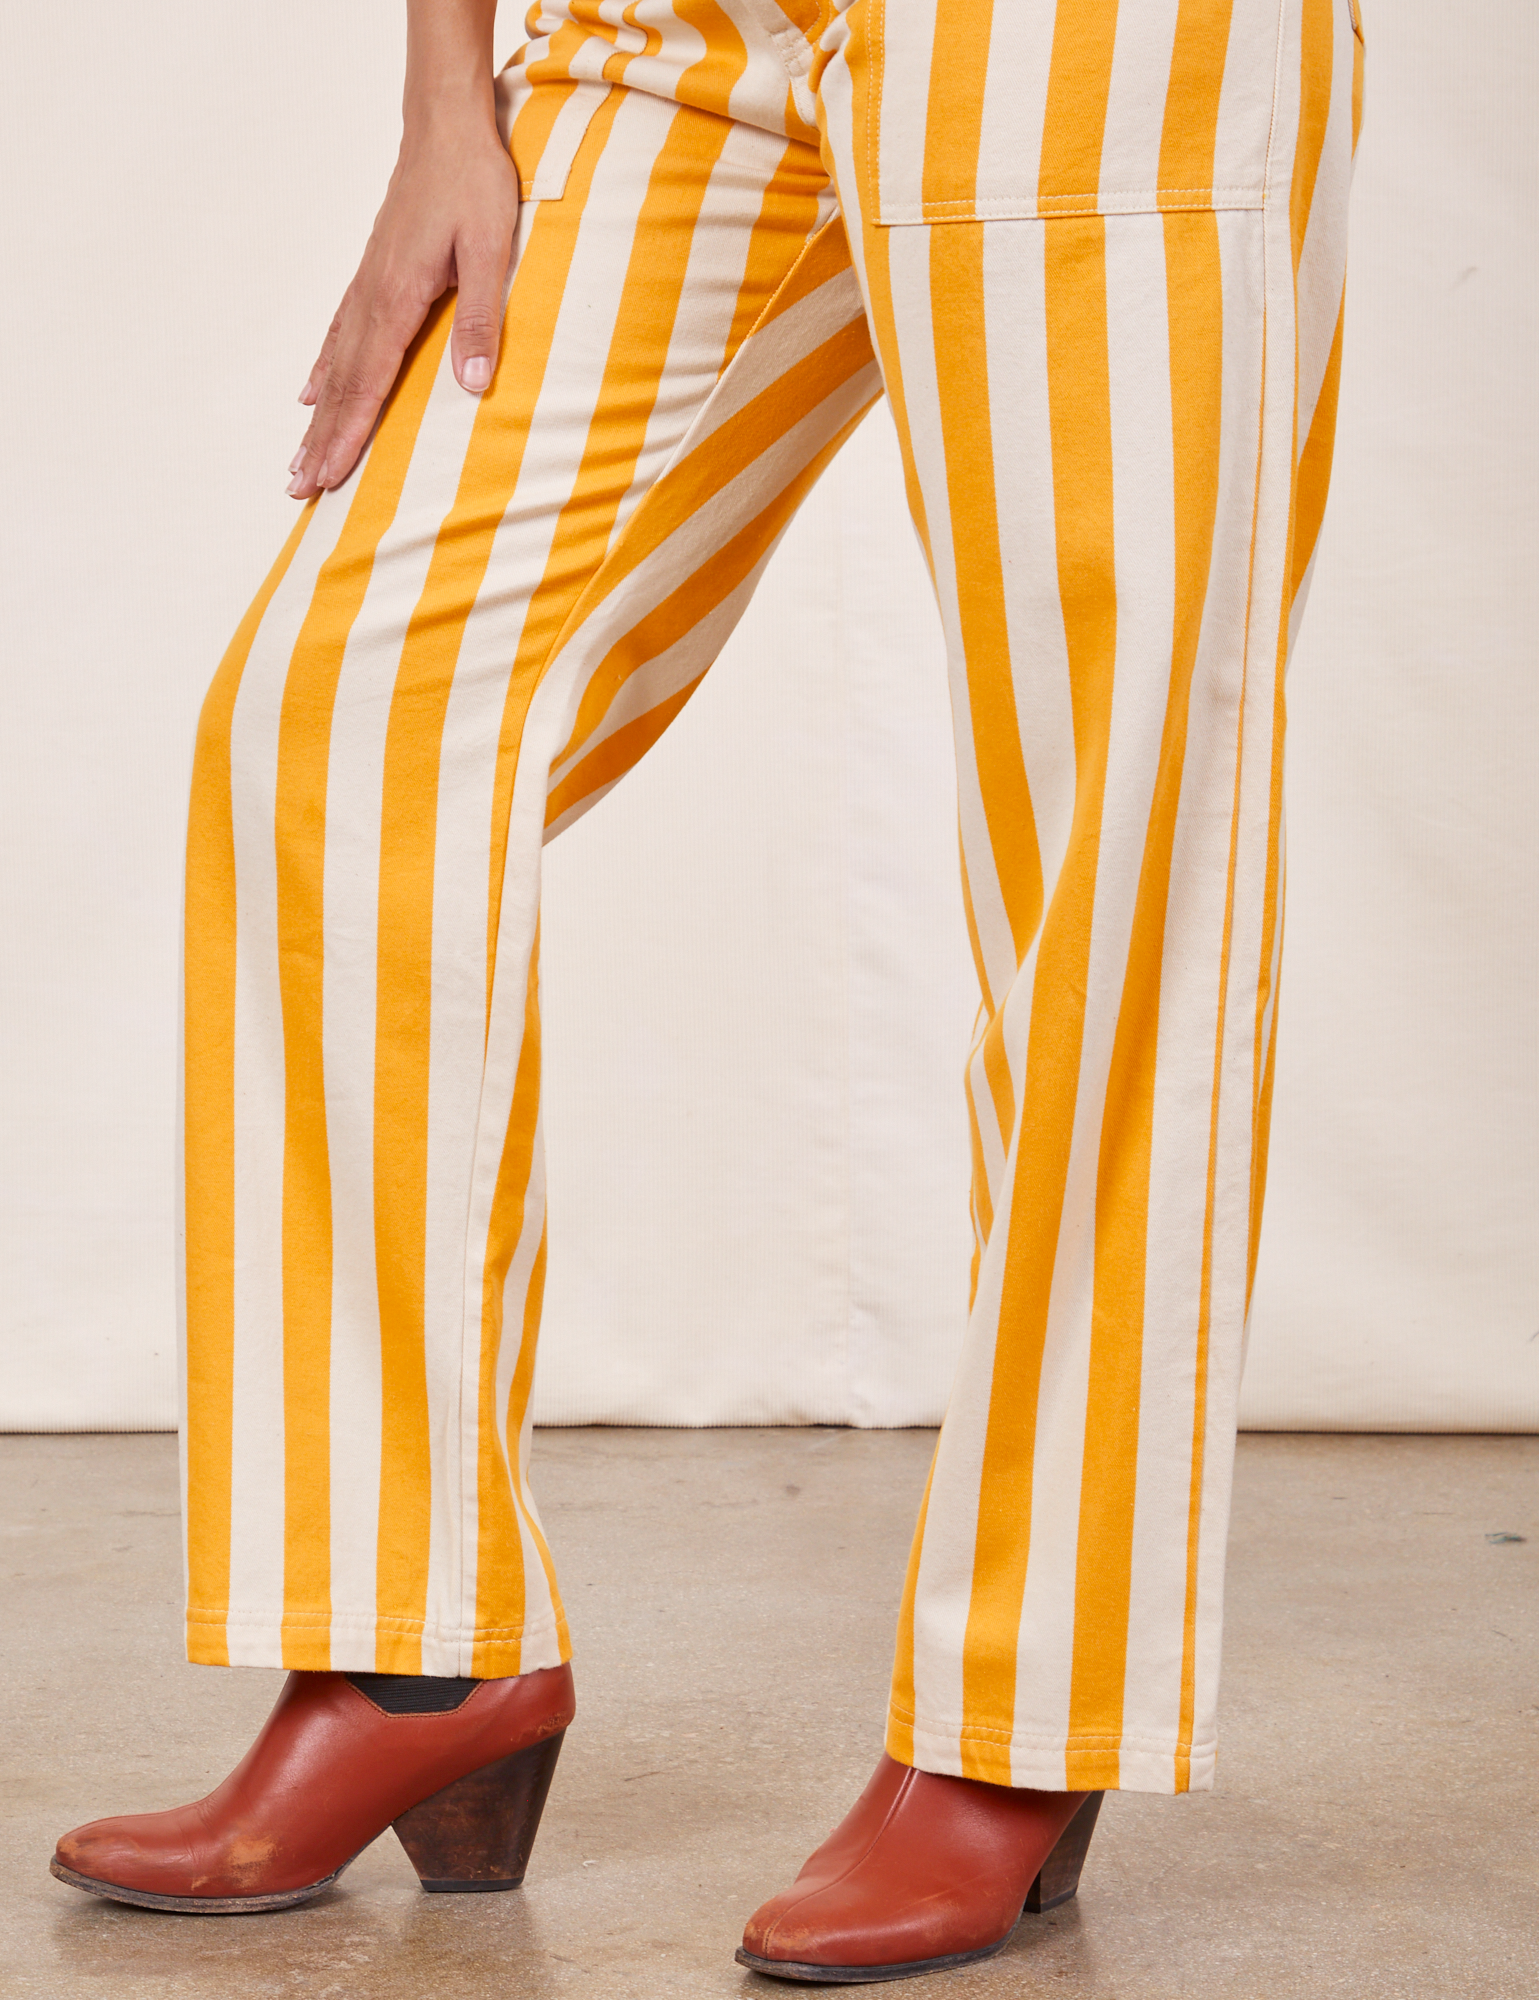 Work Pants in Lemon Stripe pant leg close up on Tiara